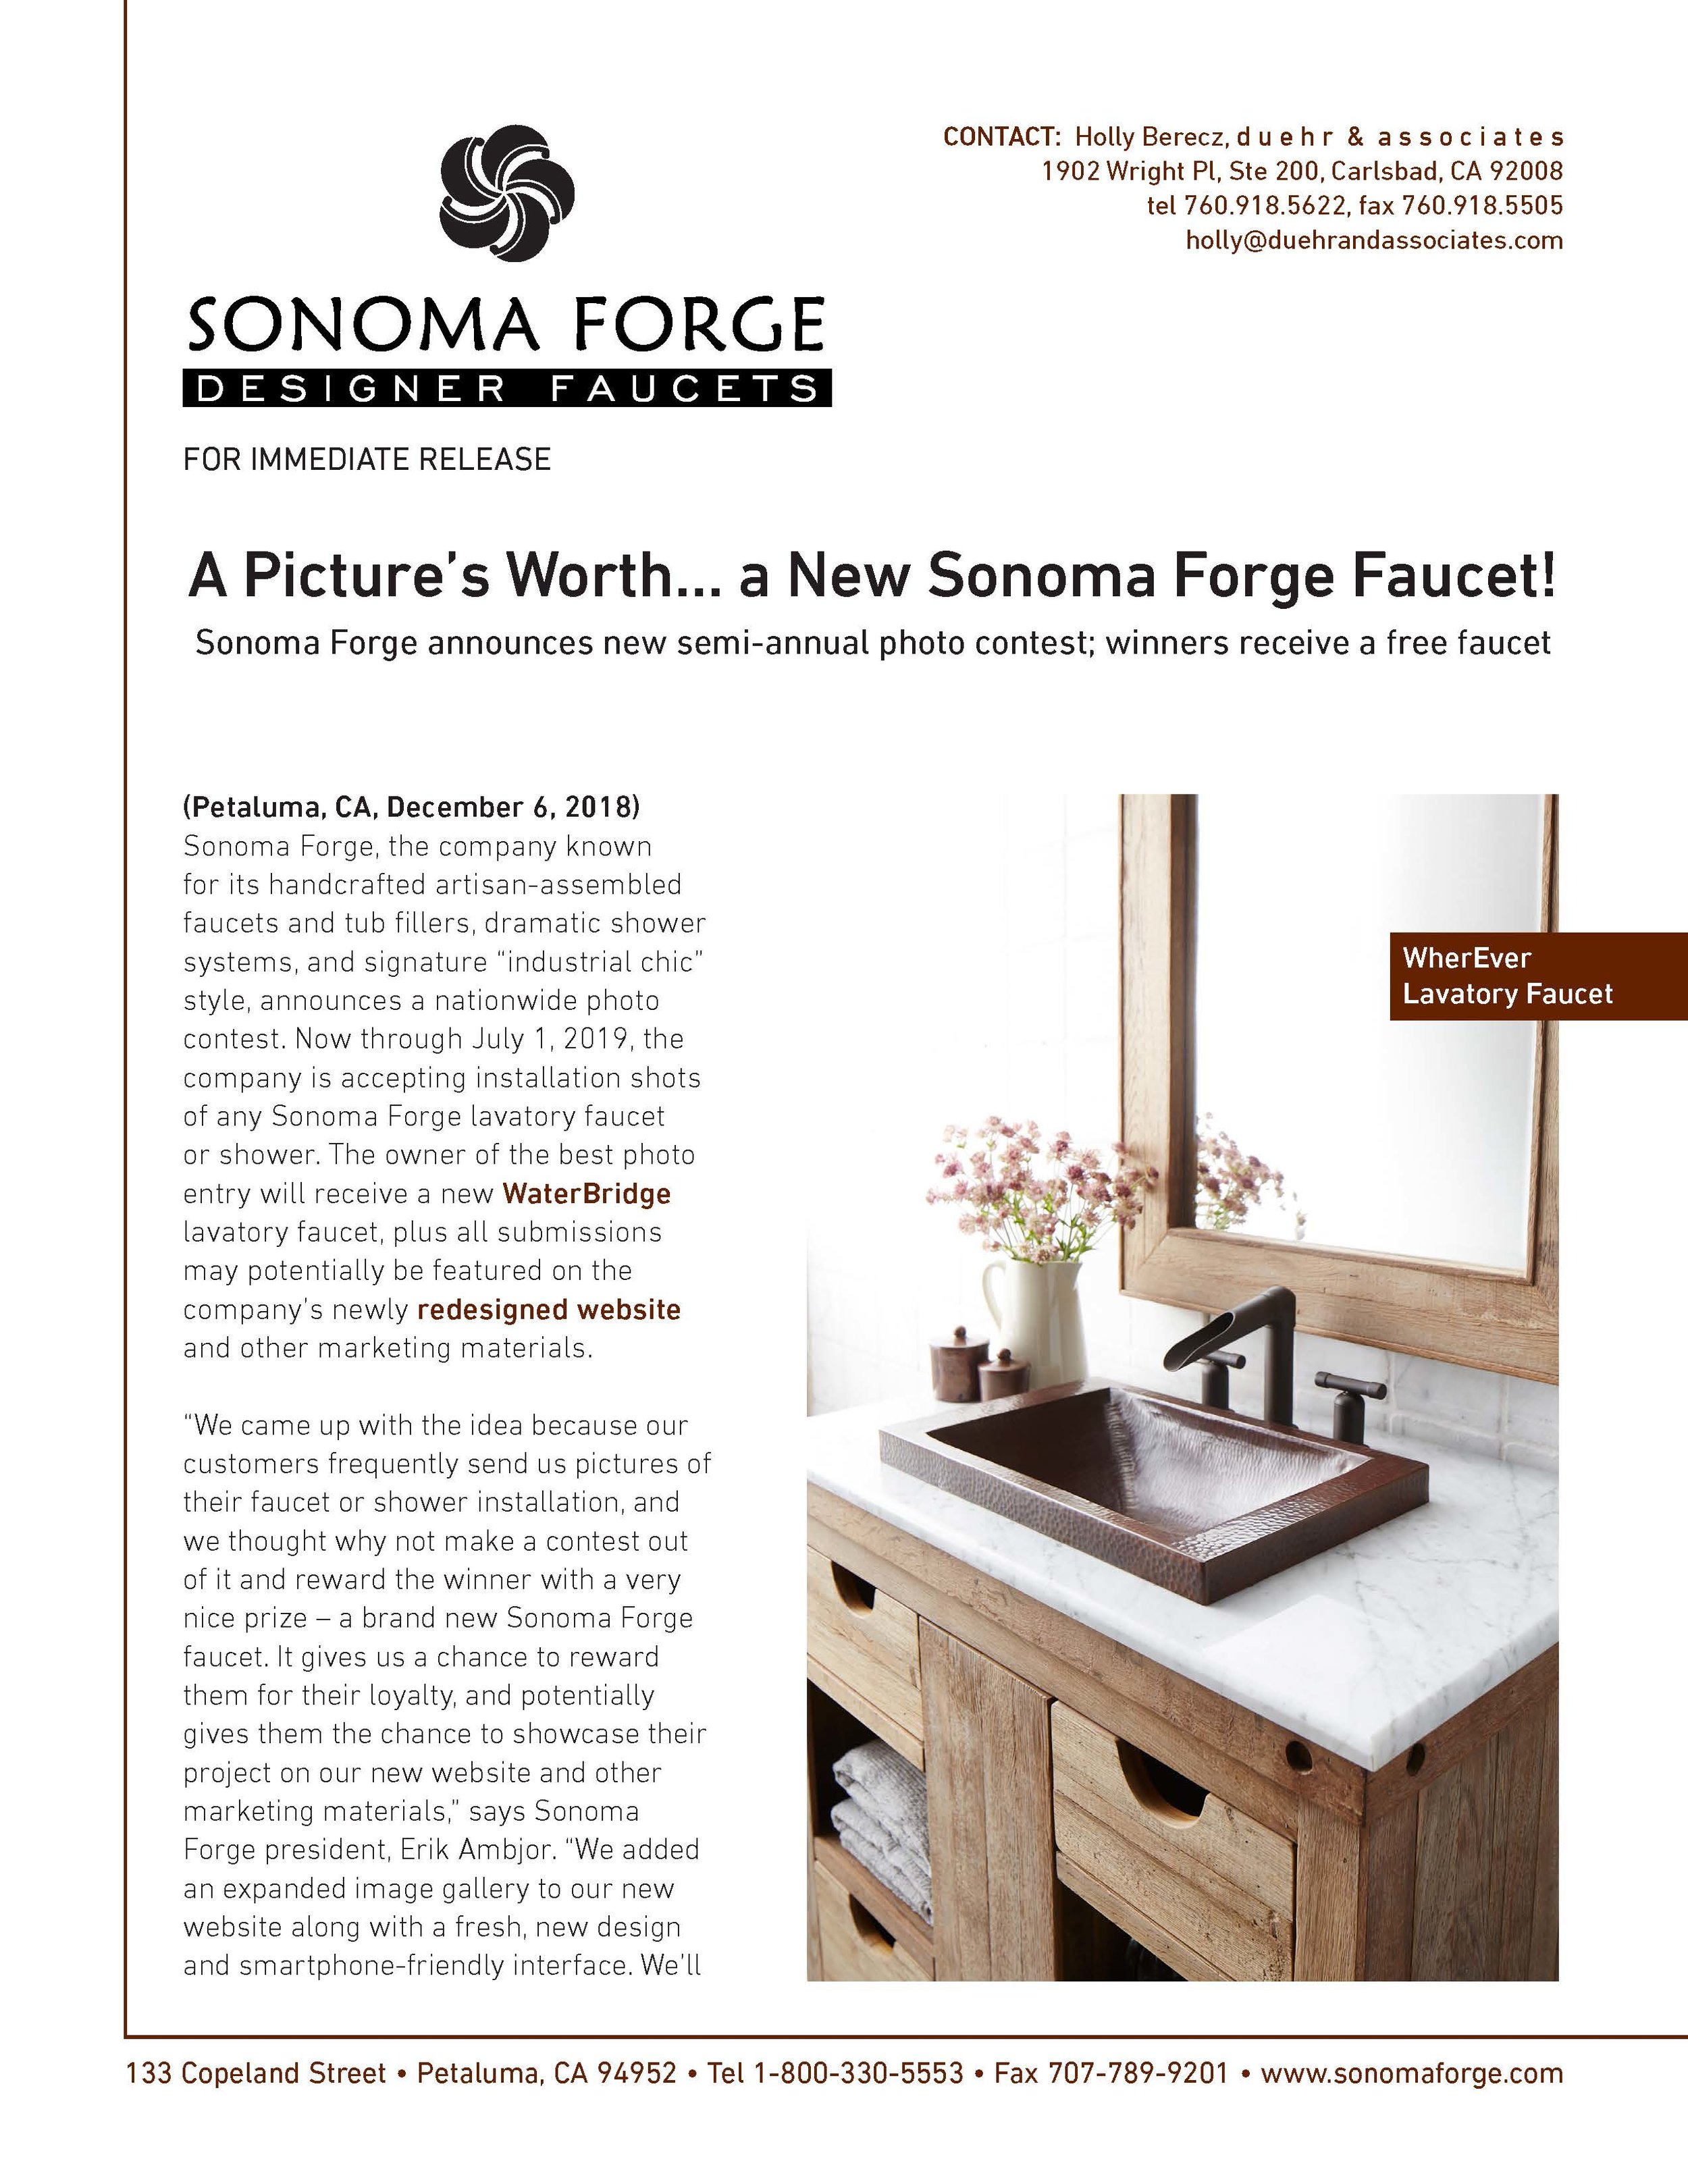 Sonoma Forge Press Release